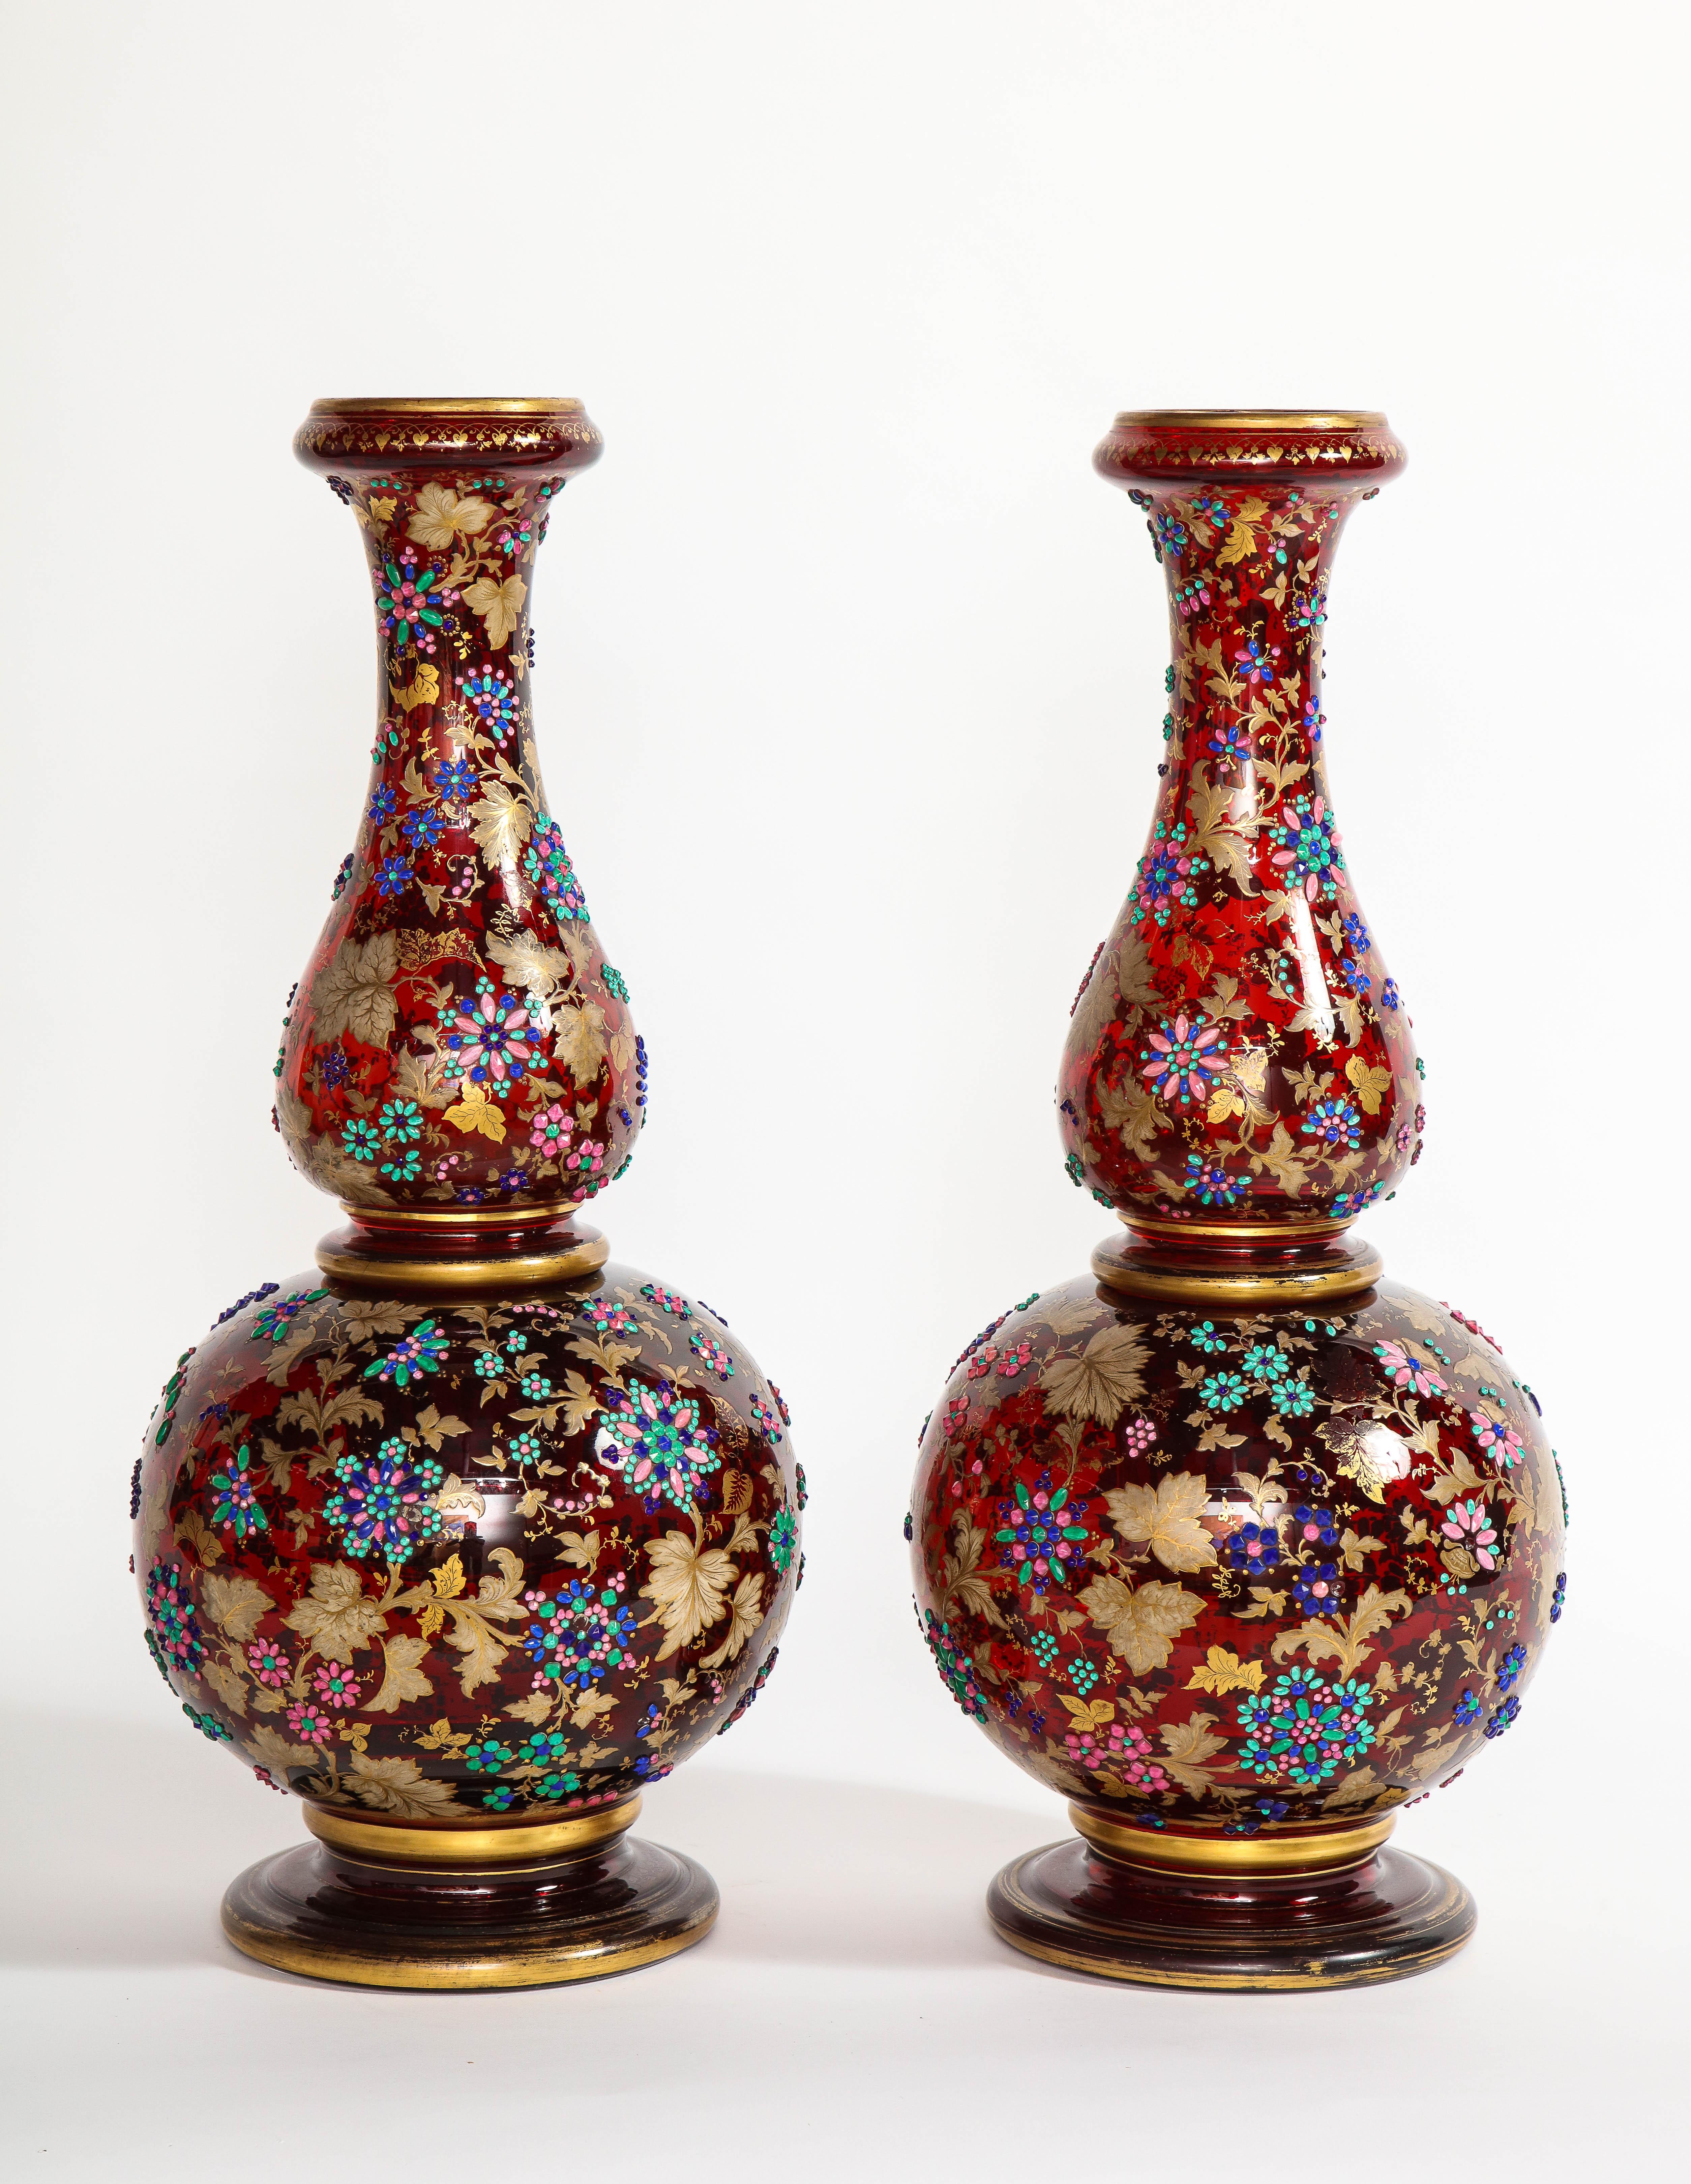 Paire monumentale de vases anciens du XIXe siècle de Moser à deux pièces en rubis superposé et en or 24 carats à deux tons, bruni et mat. Chacun de ces vases est fabuleusement fabriqué à la main avec des détails exquis. Des bijoux finement appliqués